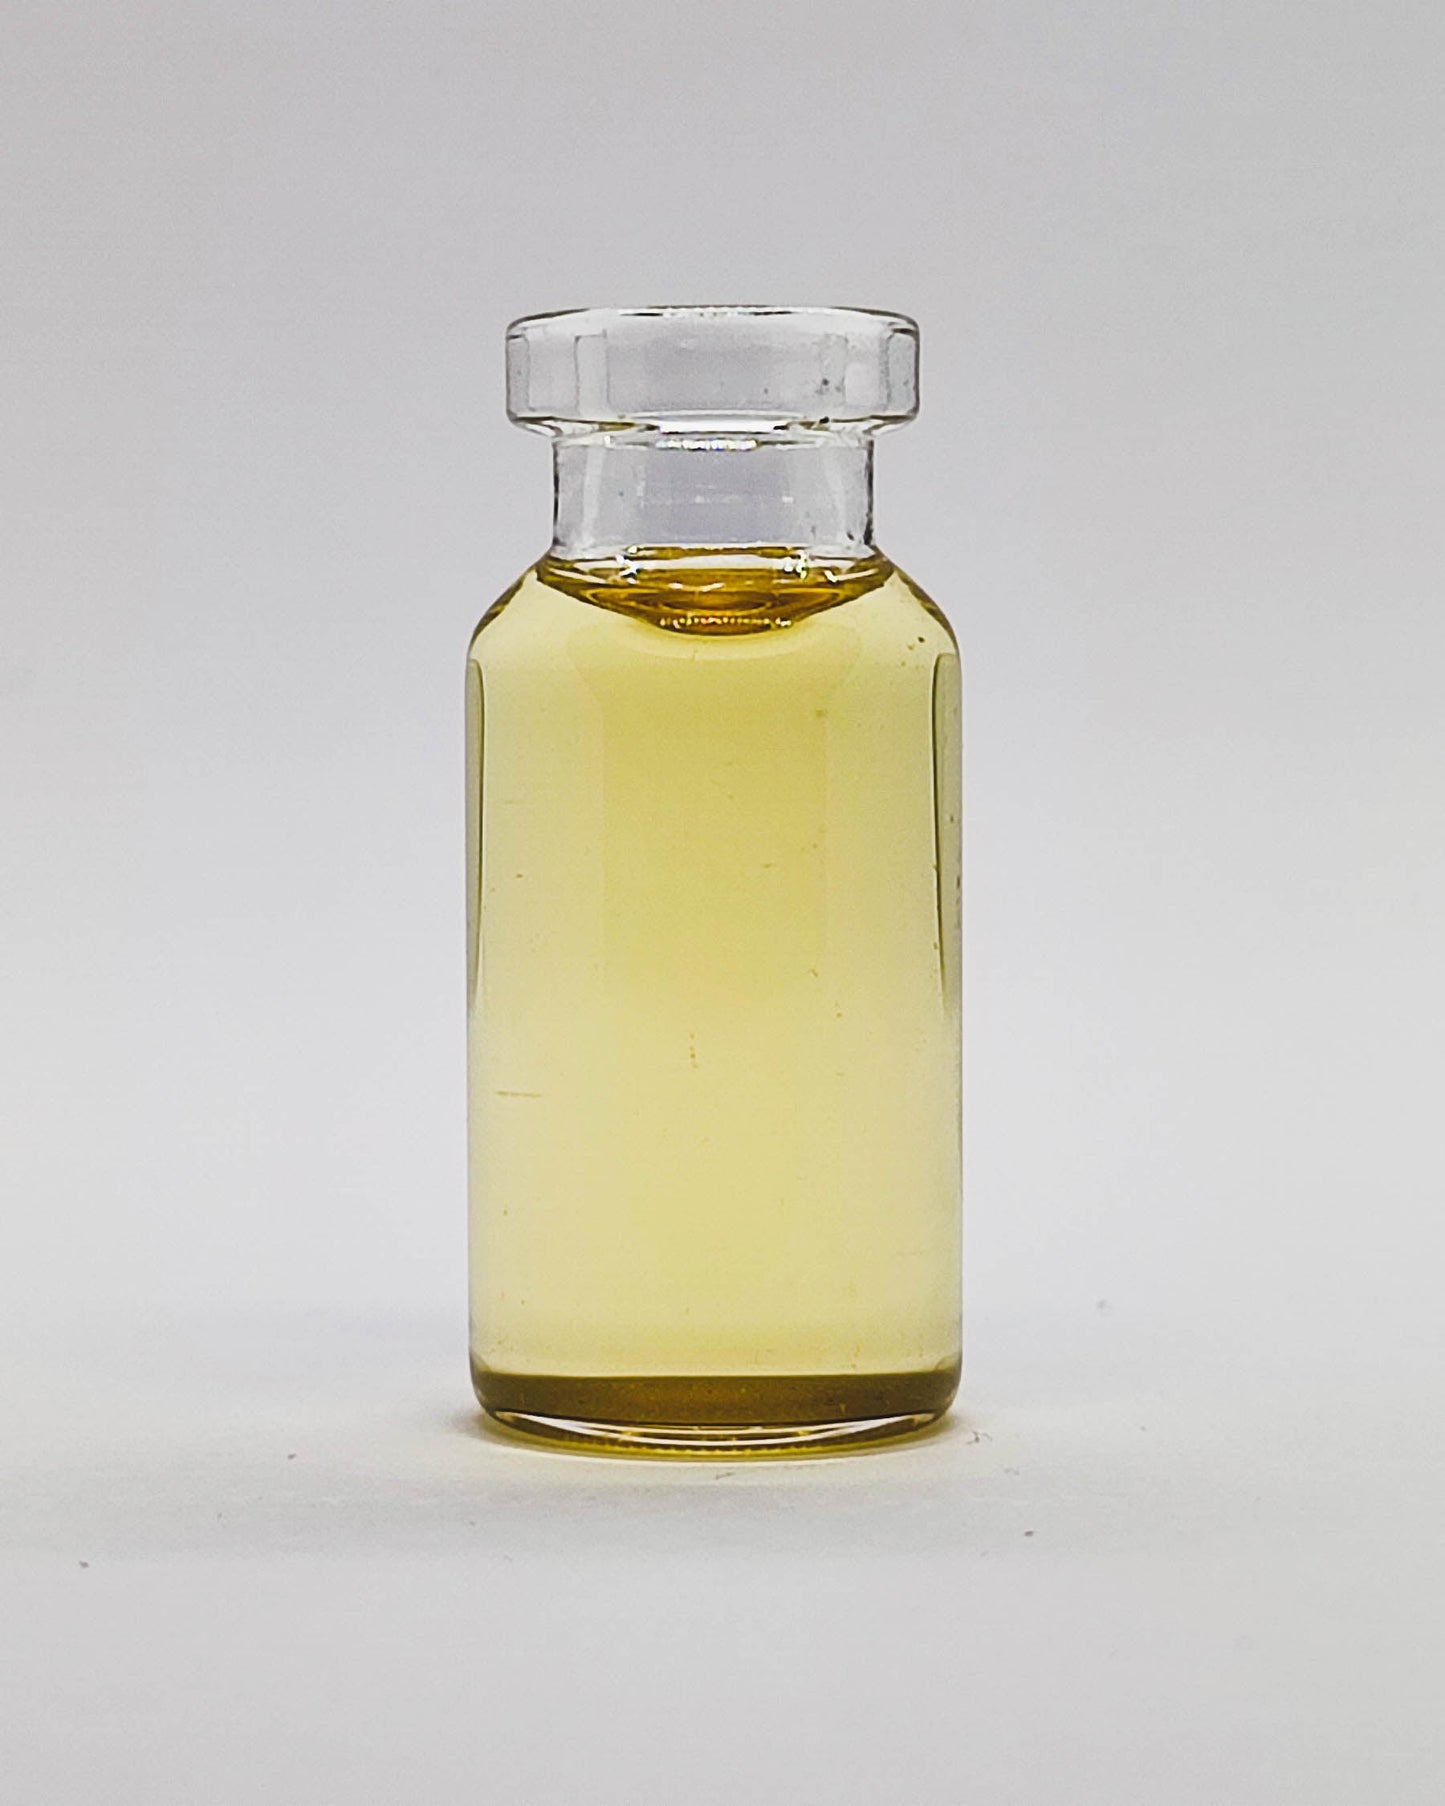 Geranium Essential Oil 10ml